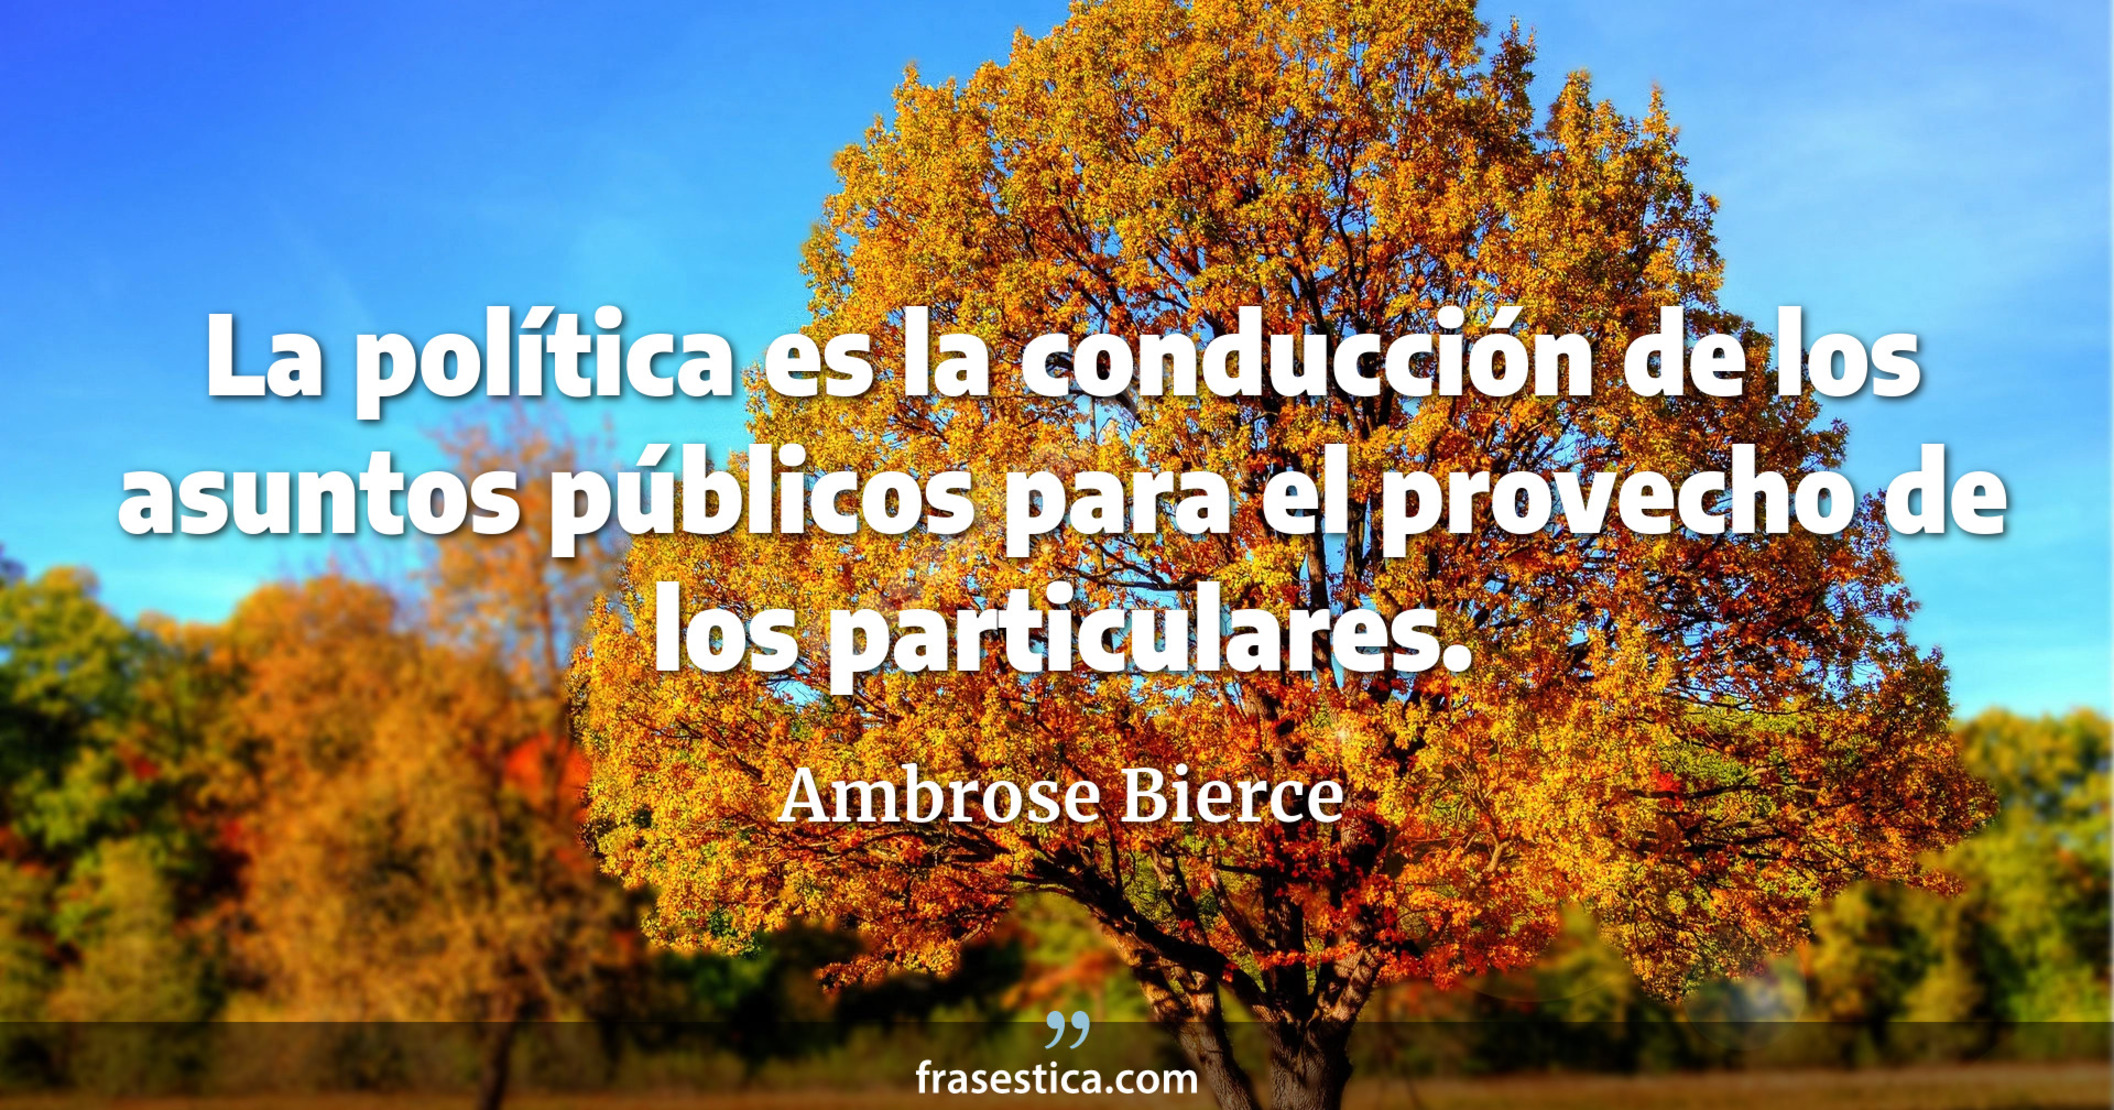 La política es la conducción de los asuntos públicos para el provecho de los particulares. - Ambrose Bierce